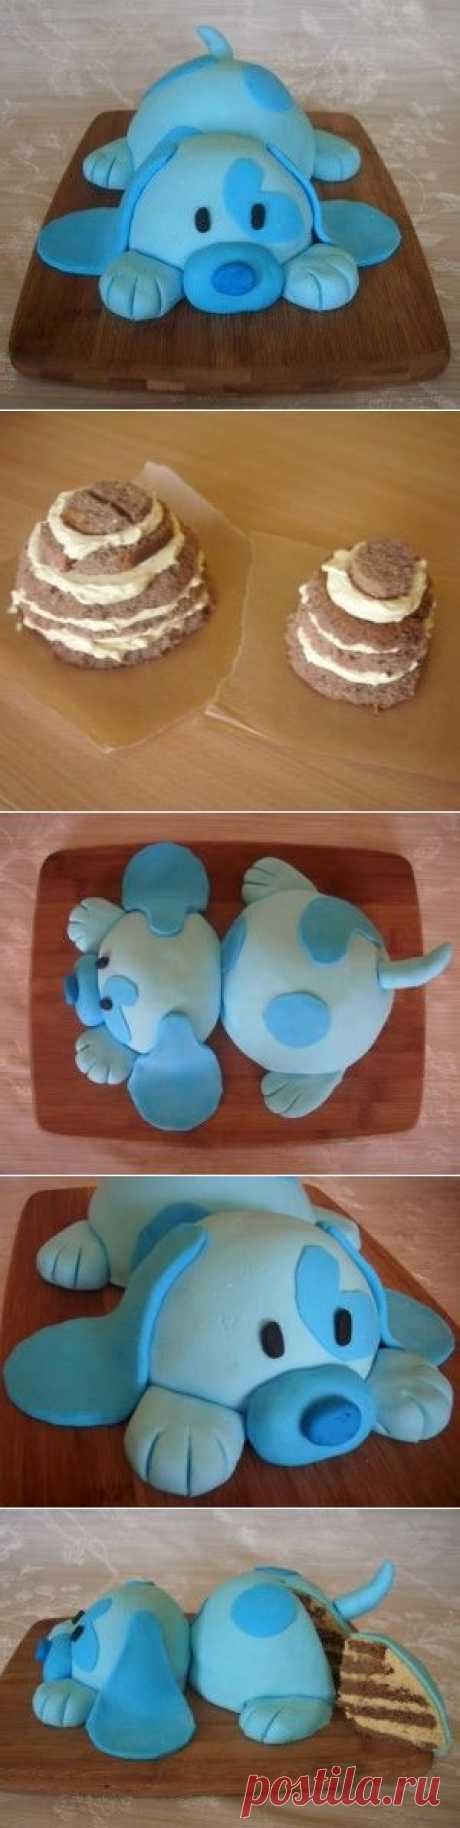 Детский торт из мастики. 3D торт Собачка – мастер-класс | Рецепты тортов, пошаговое приготовление с фото